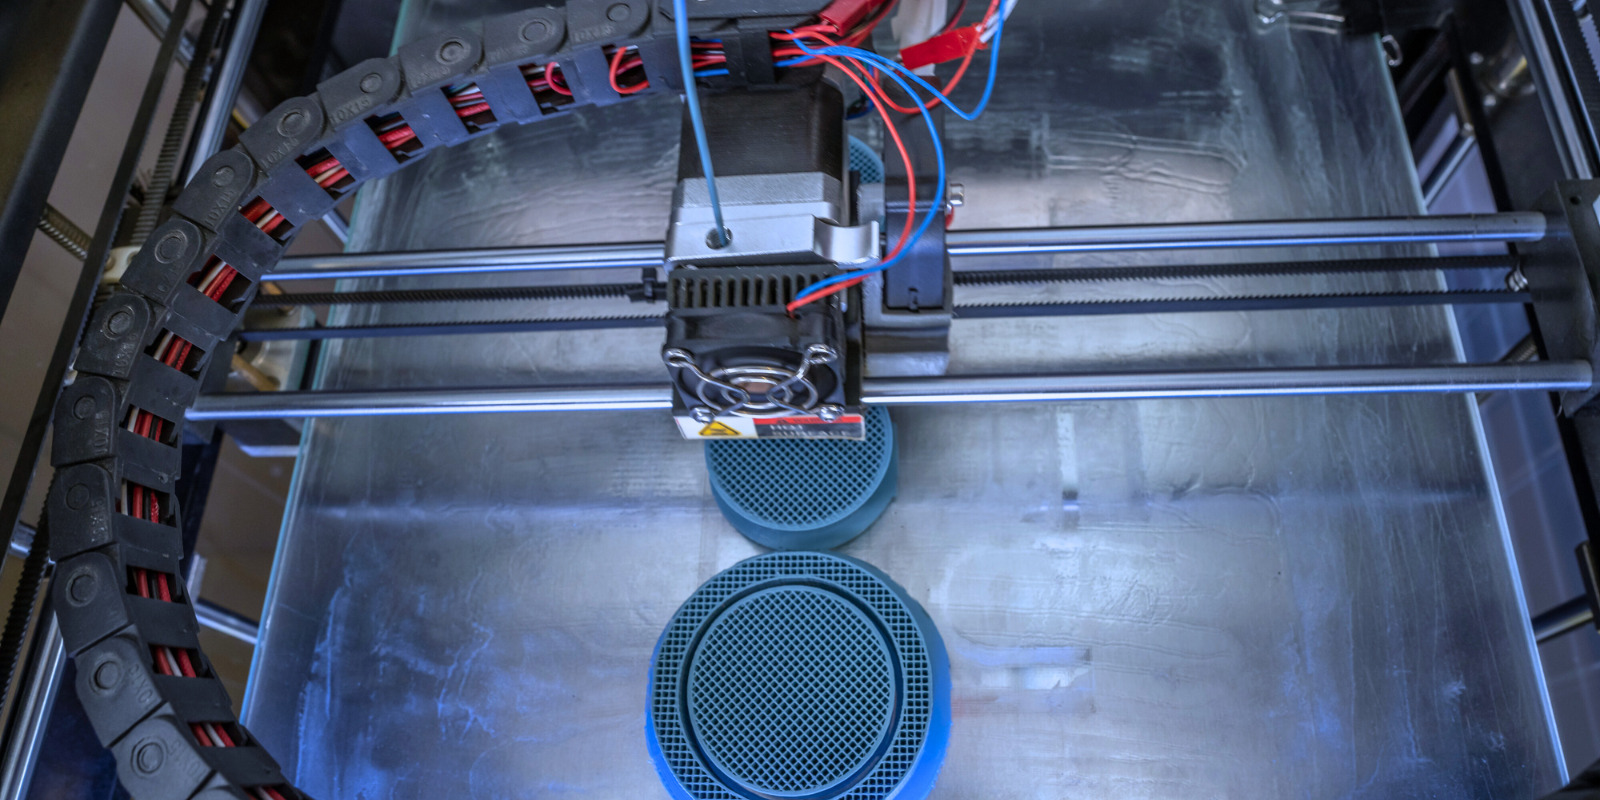 Das Bild zeigt ein 3D-Drucker um Musterteile zu fertigen, die durch den Verpackungsspezialist in Auftrag geben wurden.